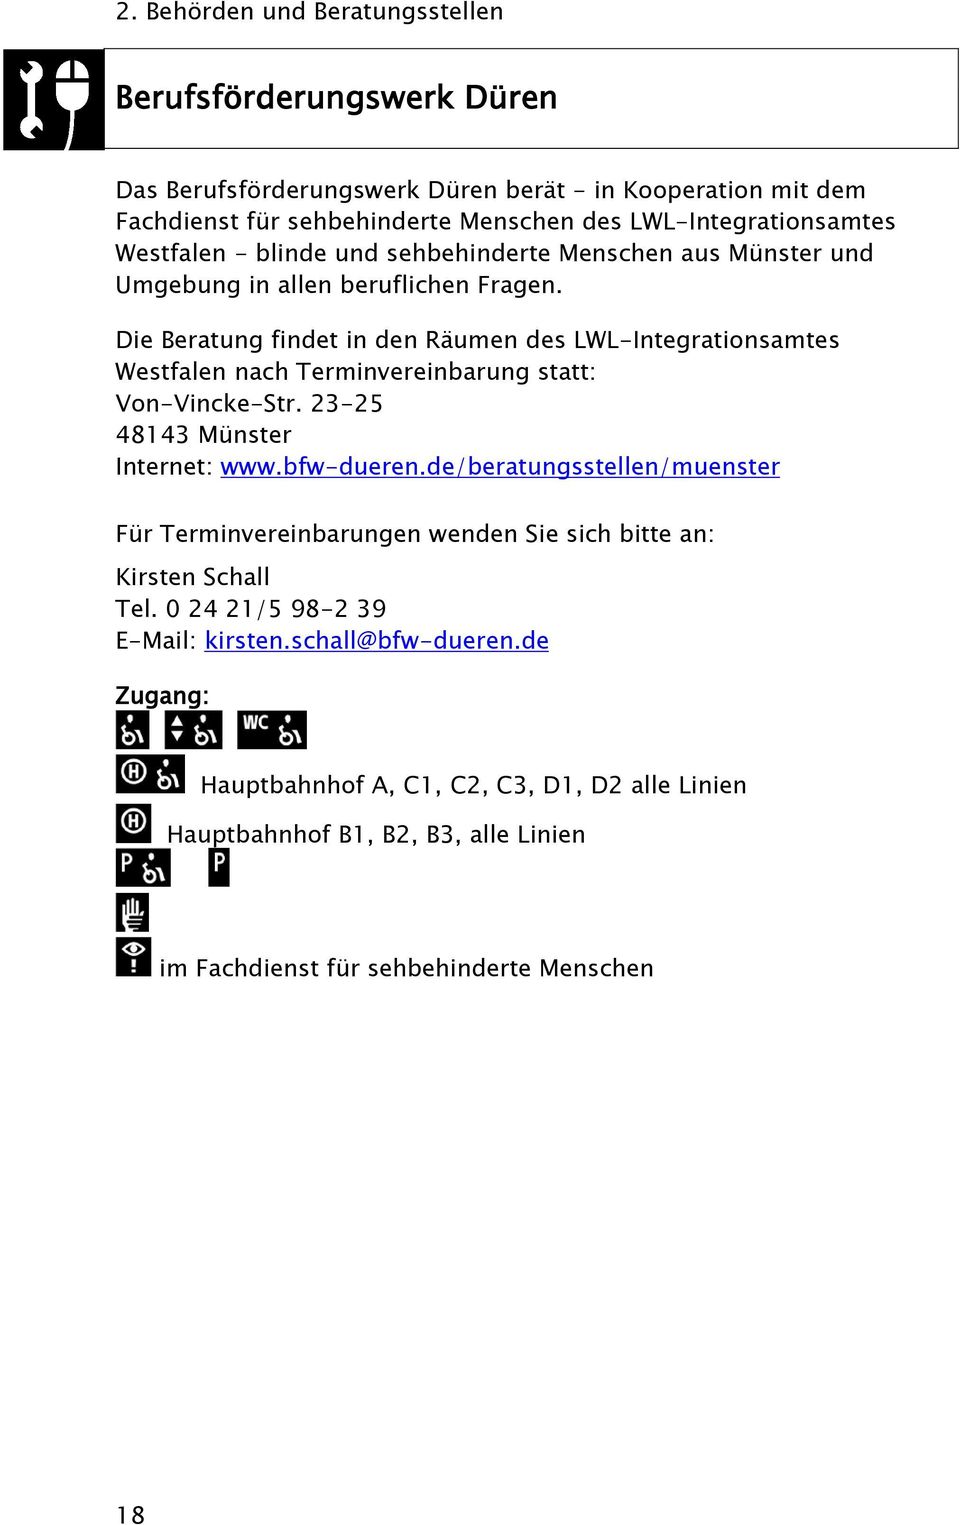 Die Beratung findet in den Räumen des LWL-Integrationsamtes Westfalen nach Terminvereinbarung statt: Von-Vincke-Str. 23-25 48143 Münster Internet: www.bfw-dueren.